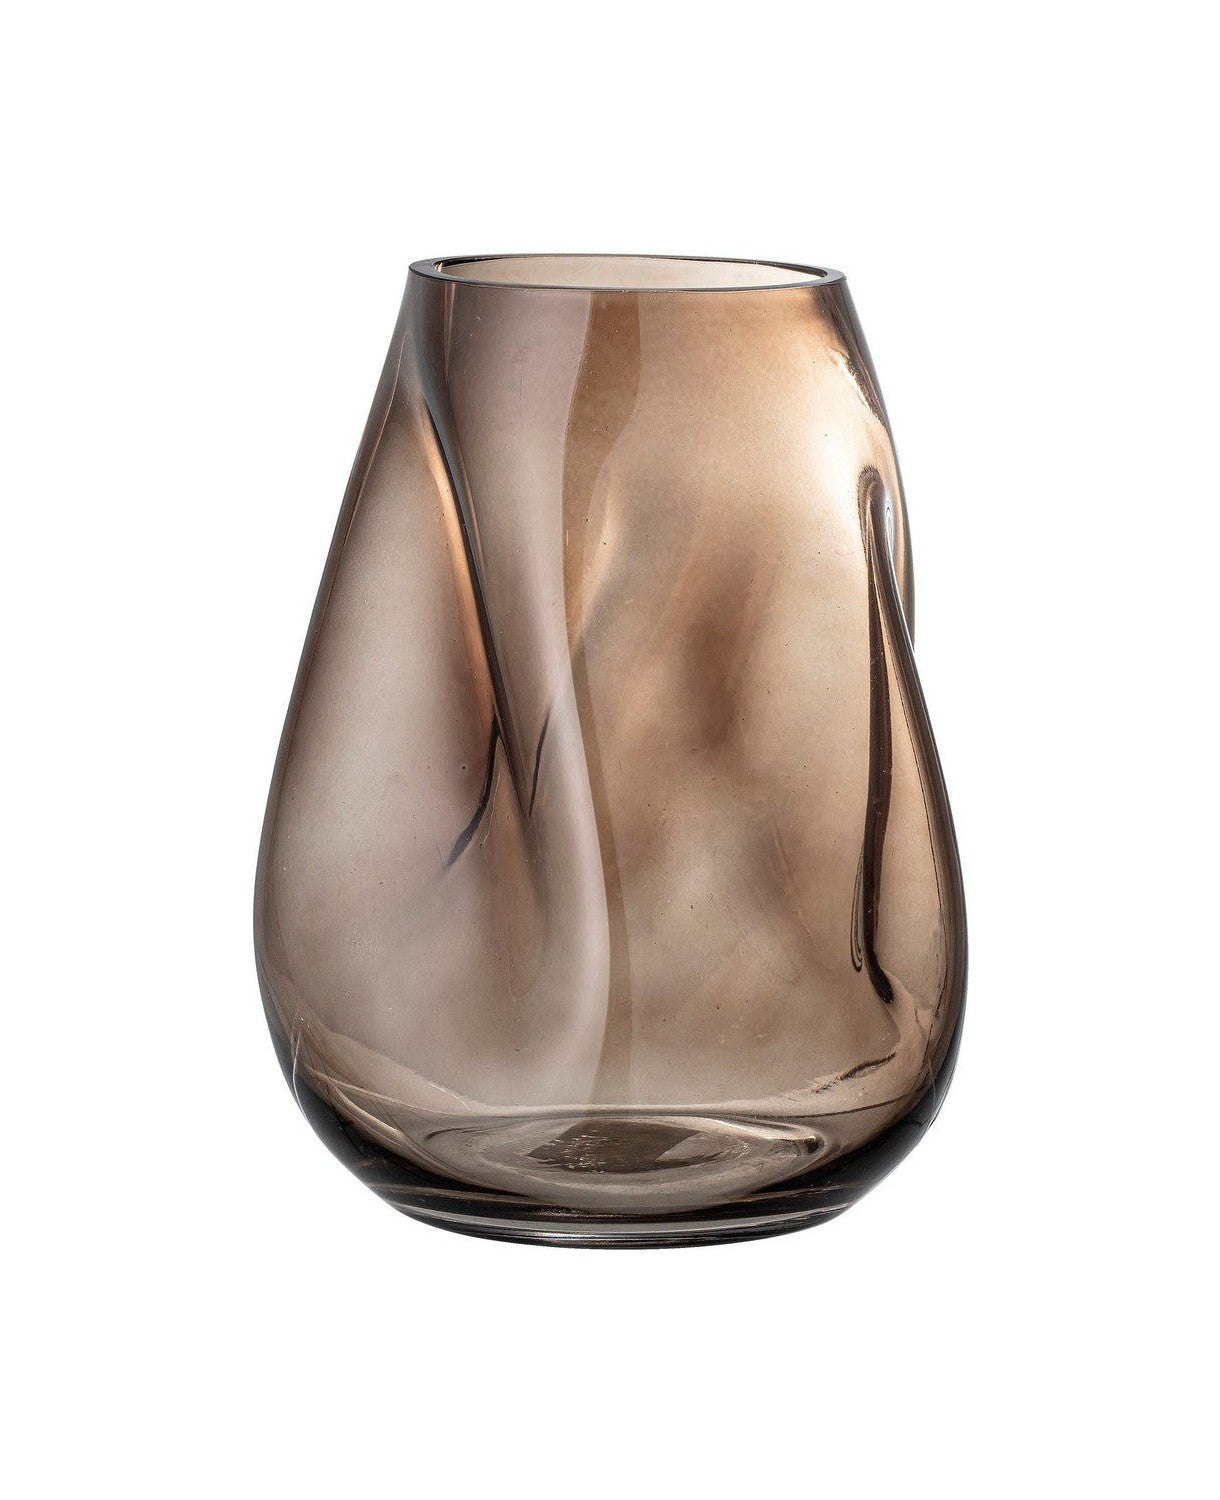 Bloomingville Ingolf Vase, Brown, Glass